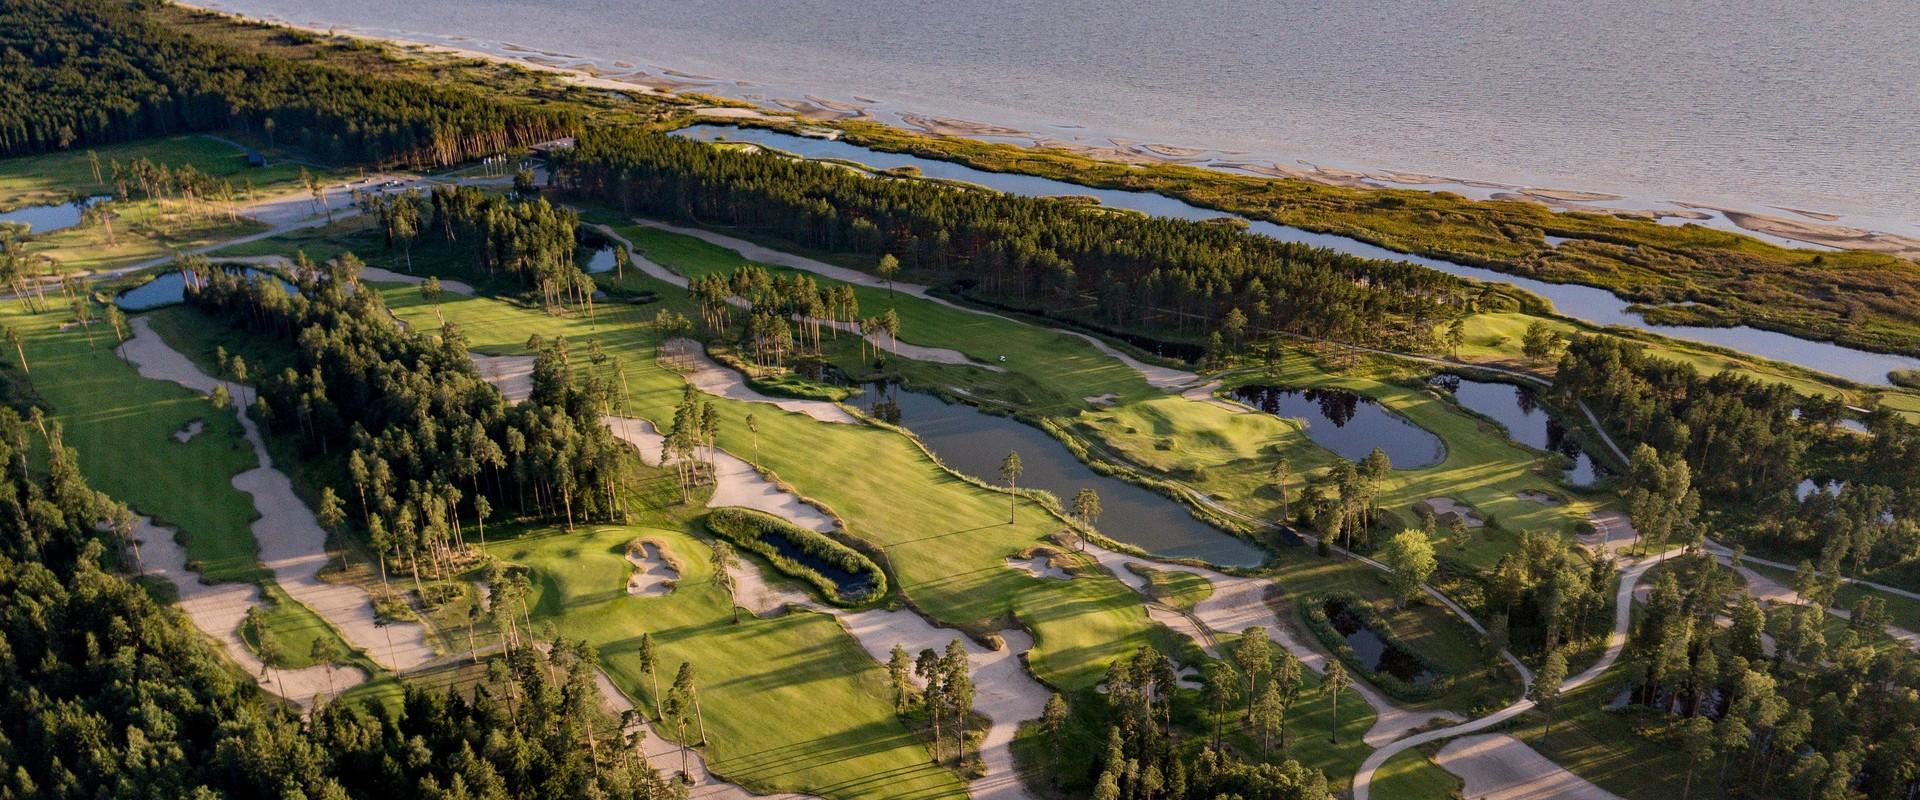 Pärnu Bay Golf Links (eröffnet im Herbst 2015) ist ein vielseitiger Golfkomplex, wo es neben dem Golfplatz mit 18 Spielbahnen auch 5 Bahnen mit Par-3-